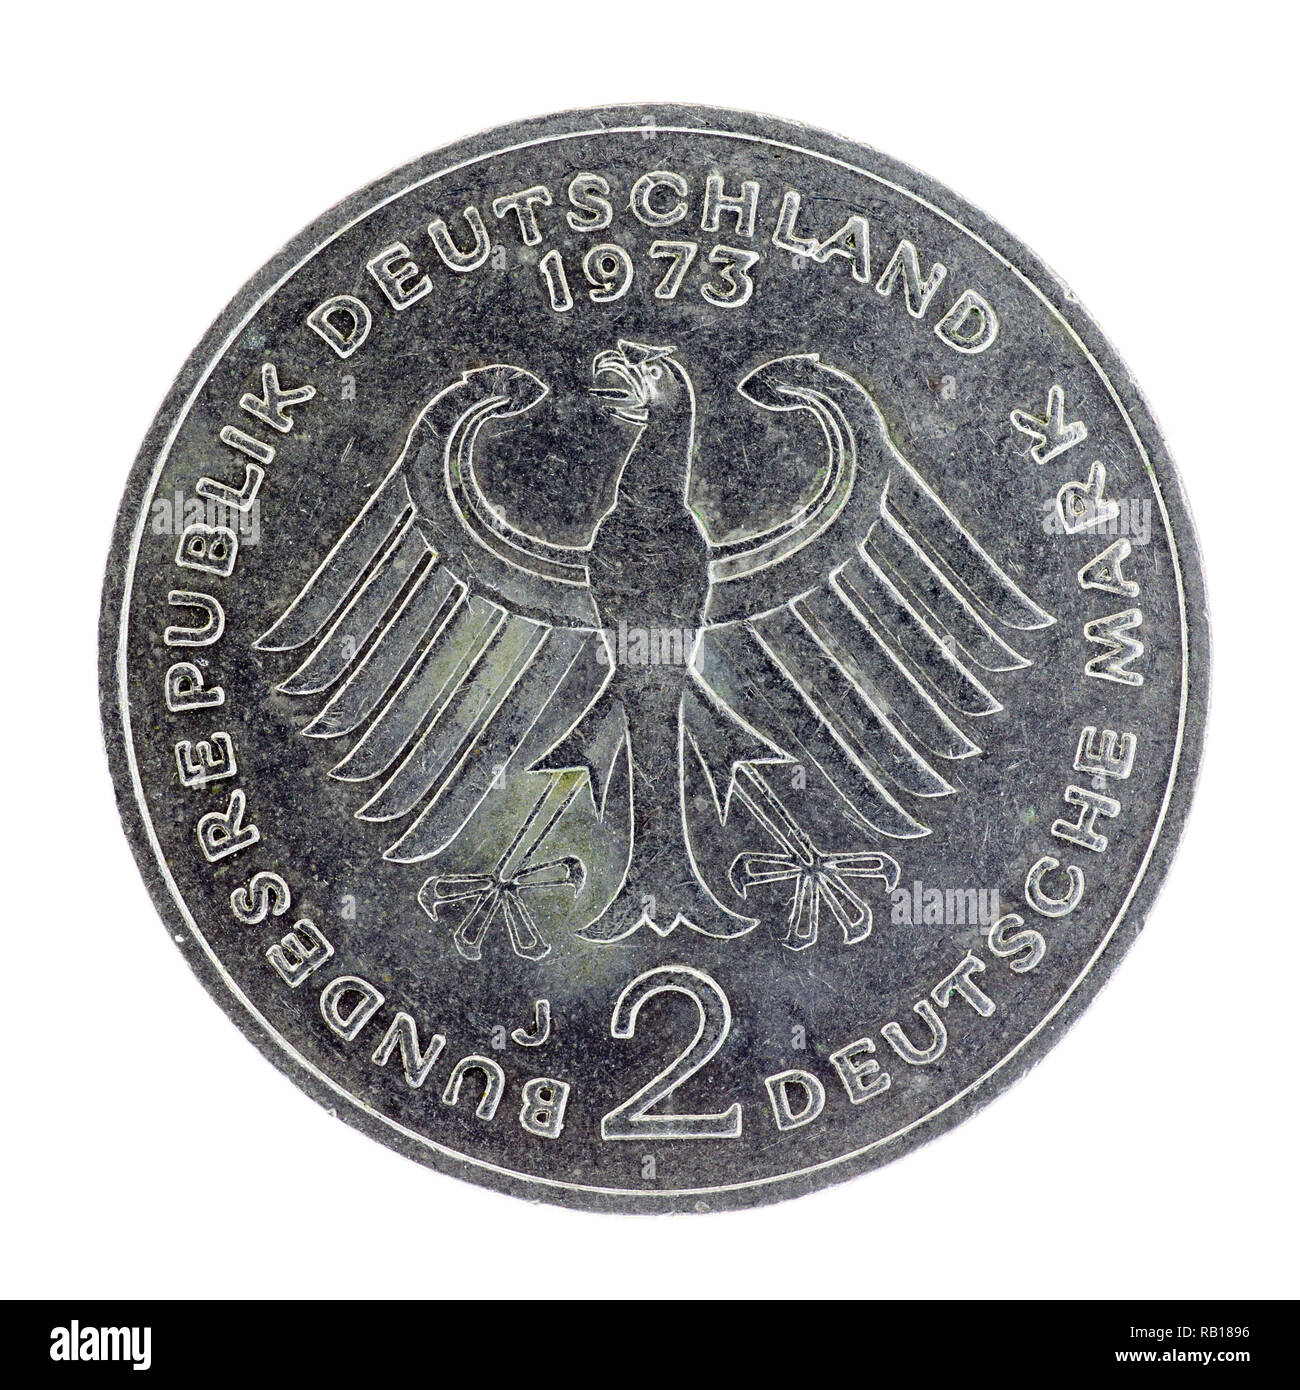 Alemán pre-Euro 2 marco alemán moneda fecha 1973 Foto de stock